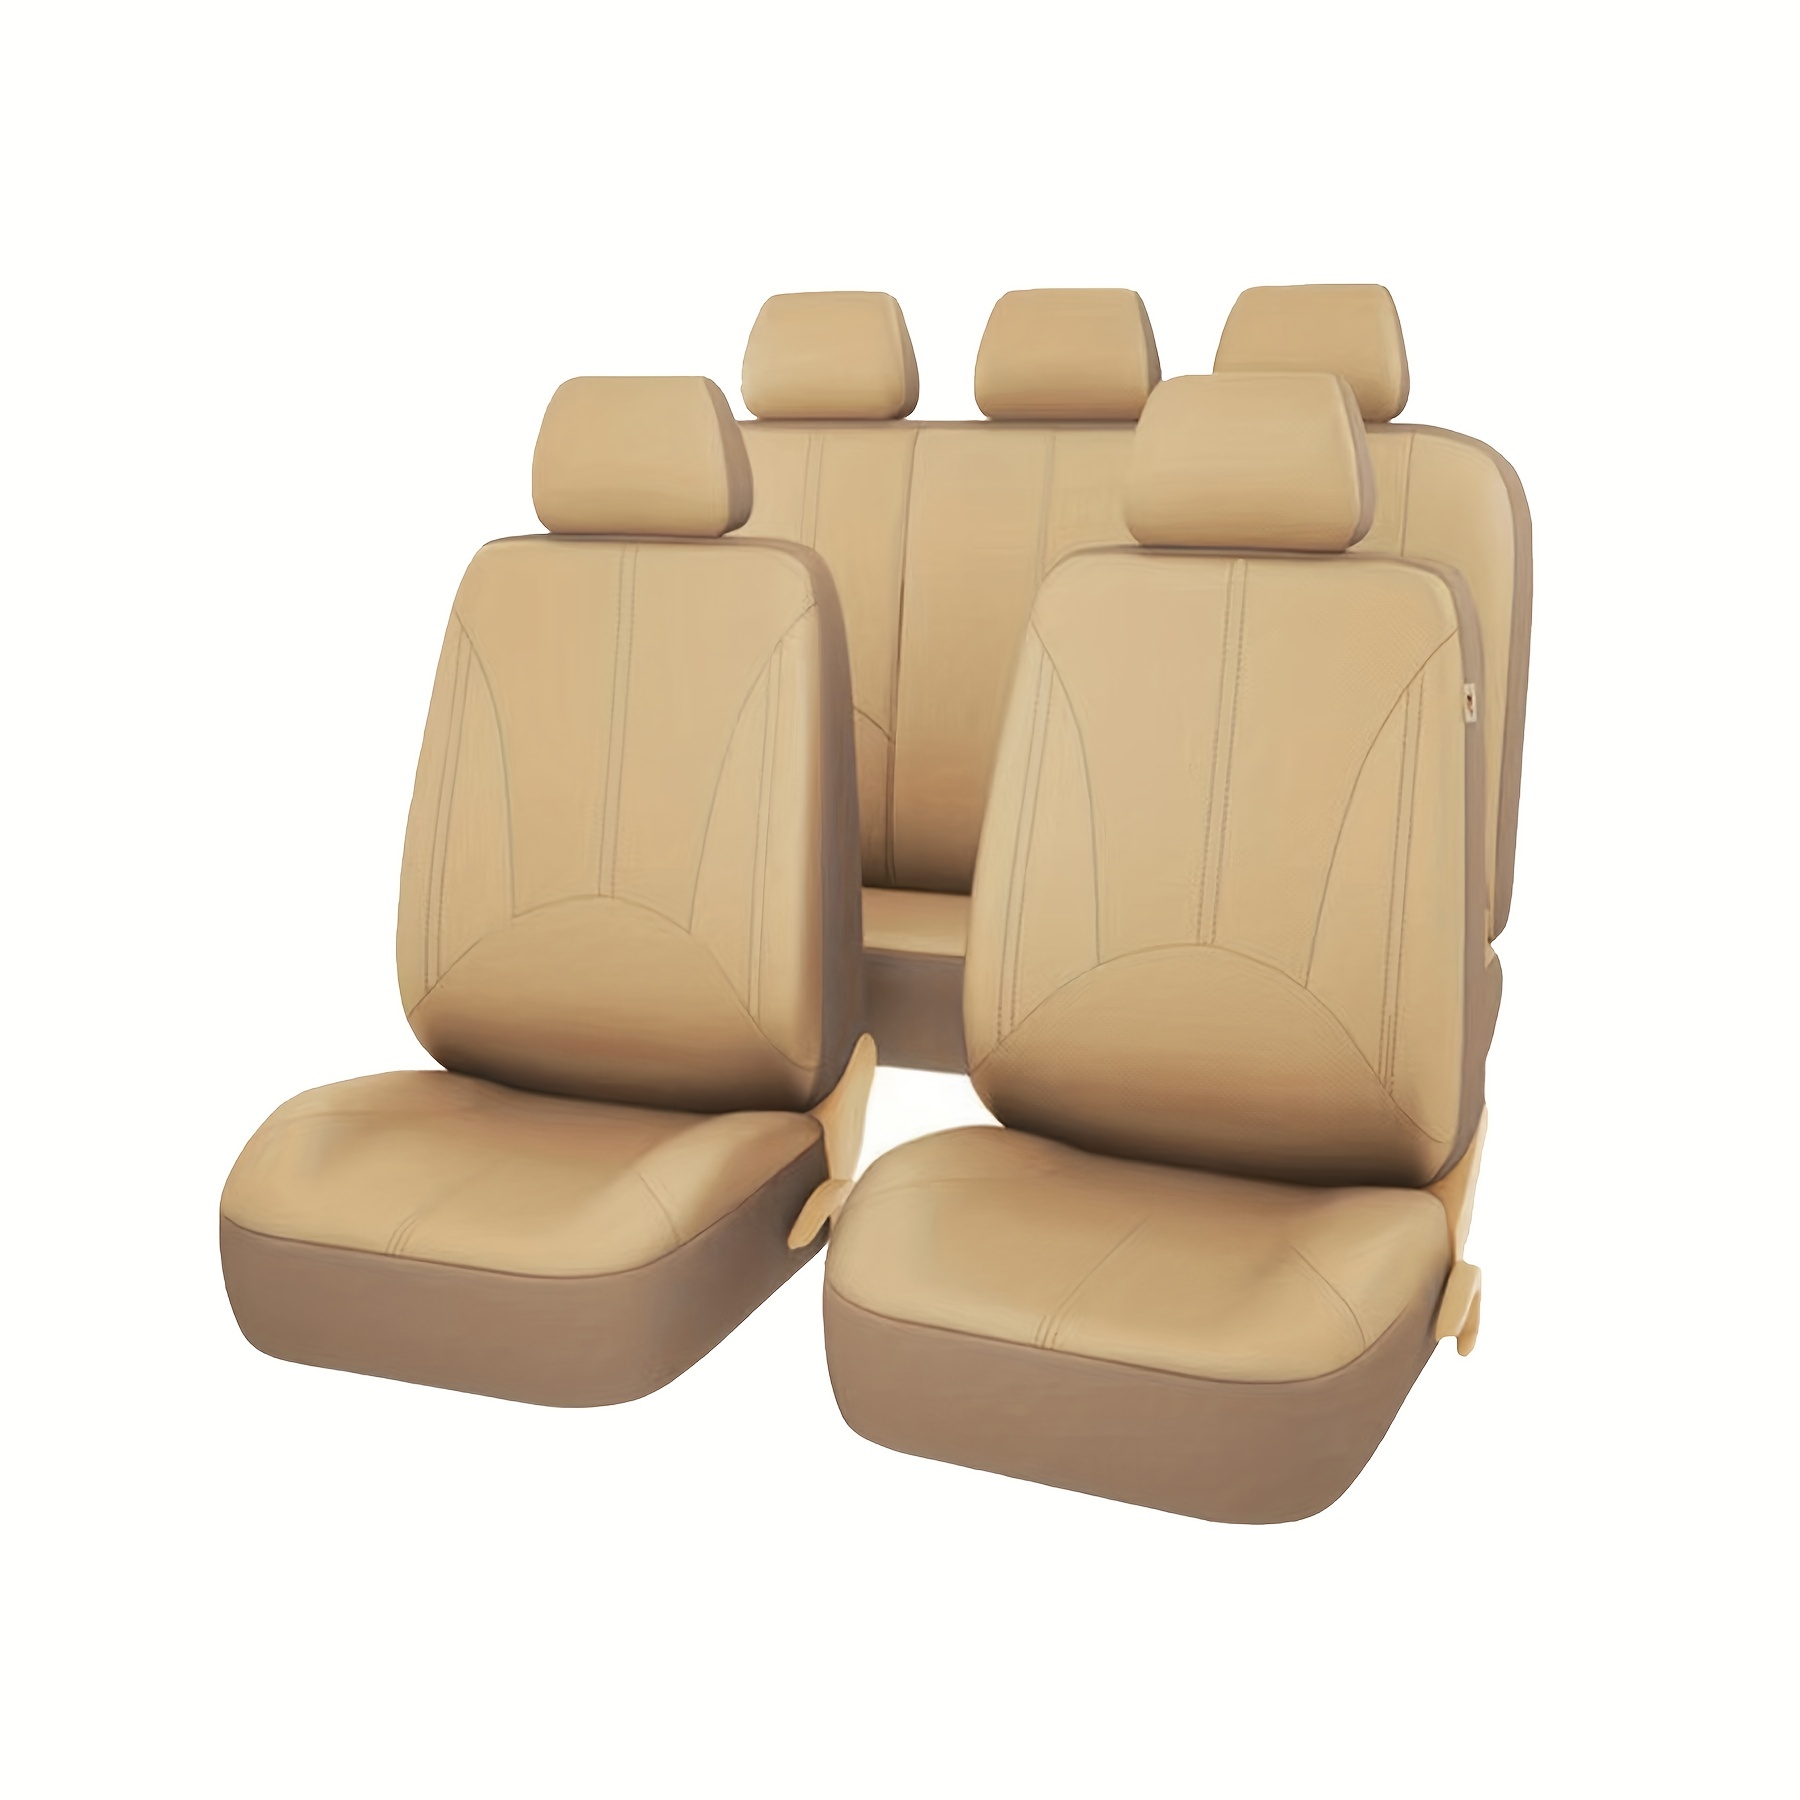 Universal Beige Auto Vorne Seat Cover Plüsch Sitzbezug Sitzauflage Sitzmatte